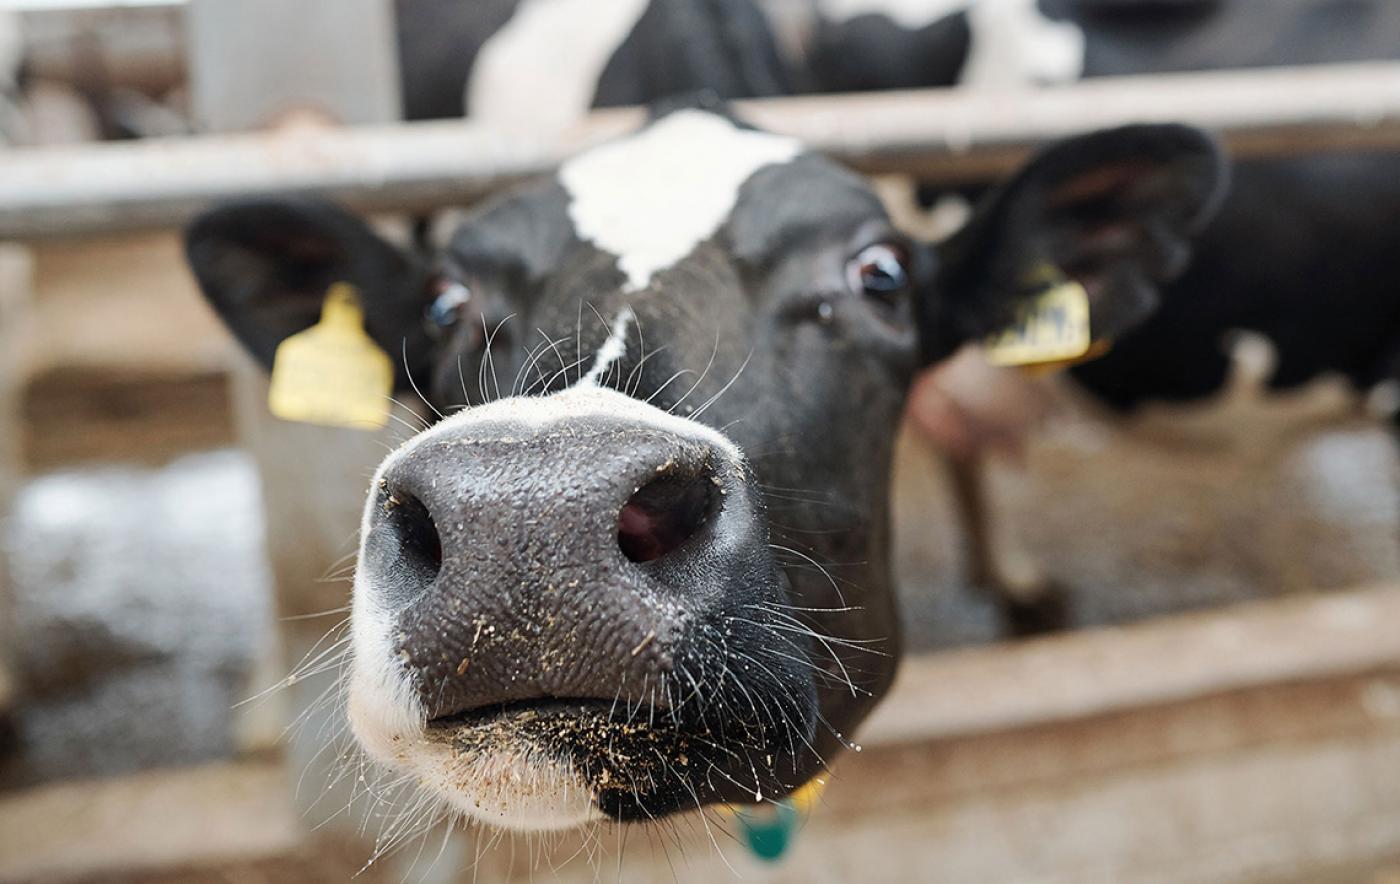 Thüringer Milchtag 2021 - Milchviehhaltung im neuen Jahrzehnt